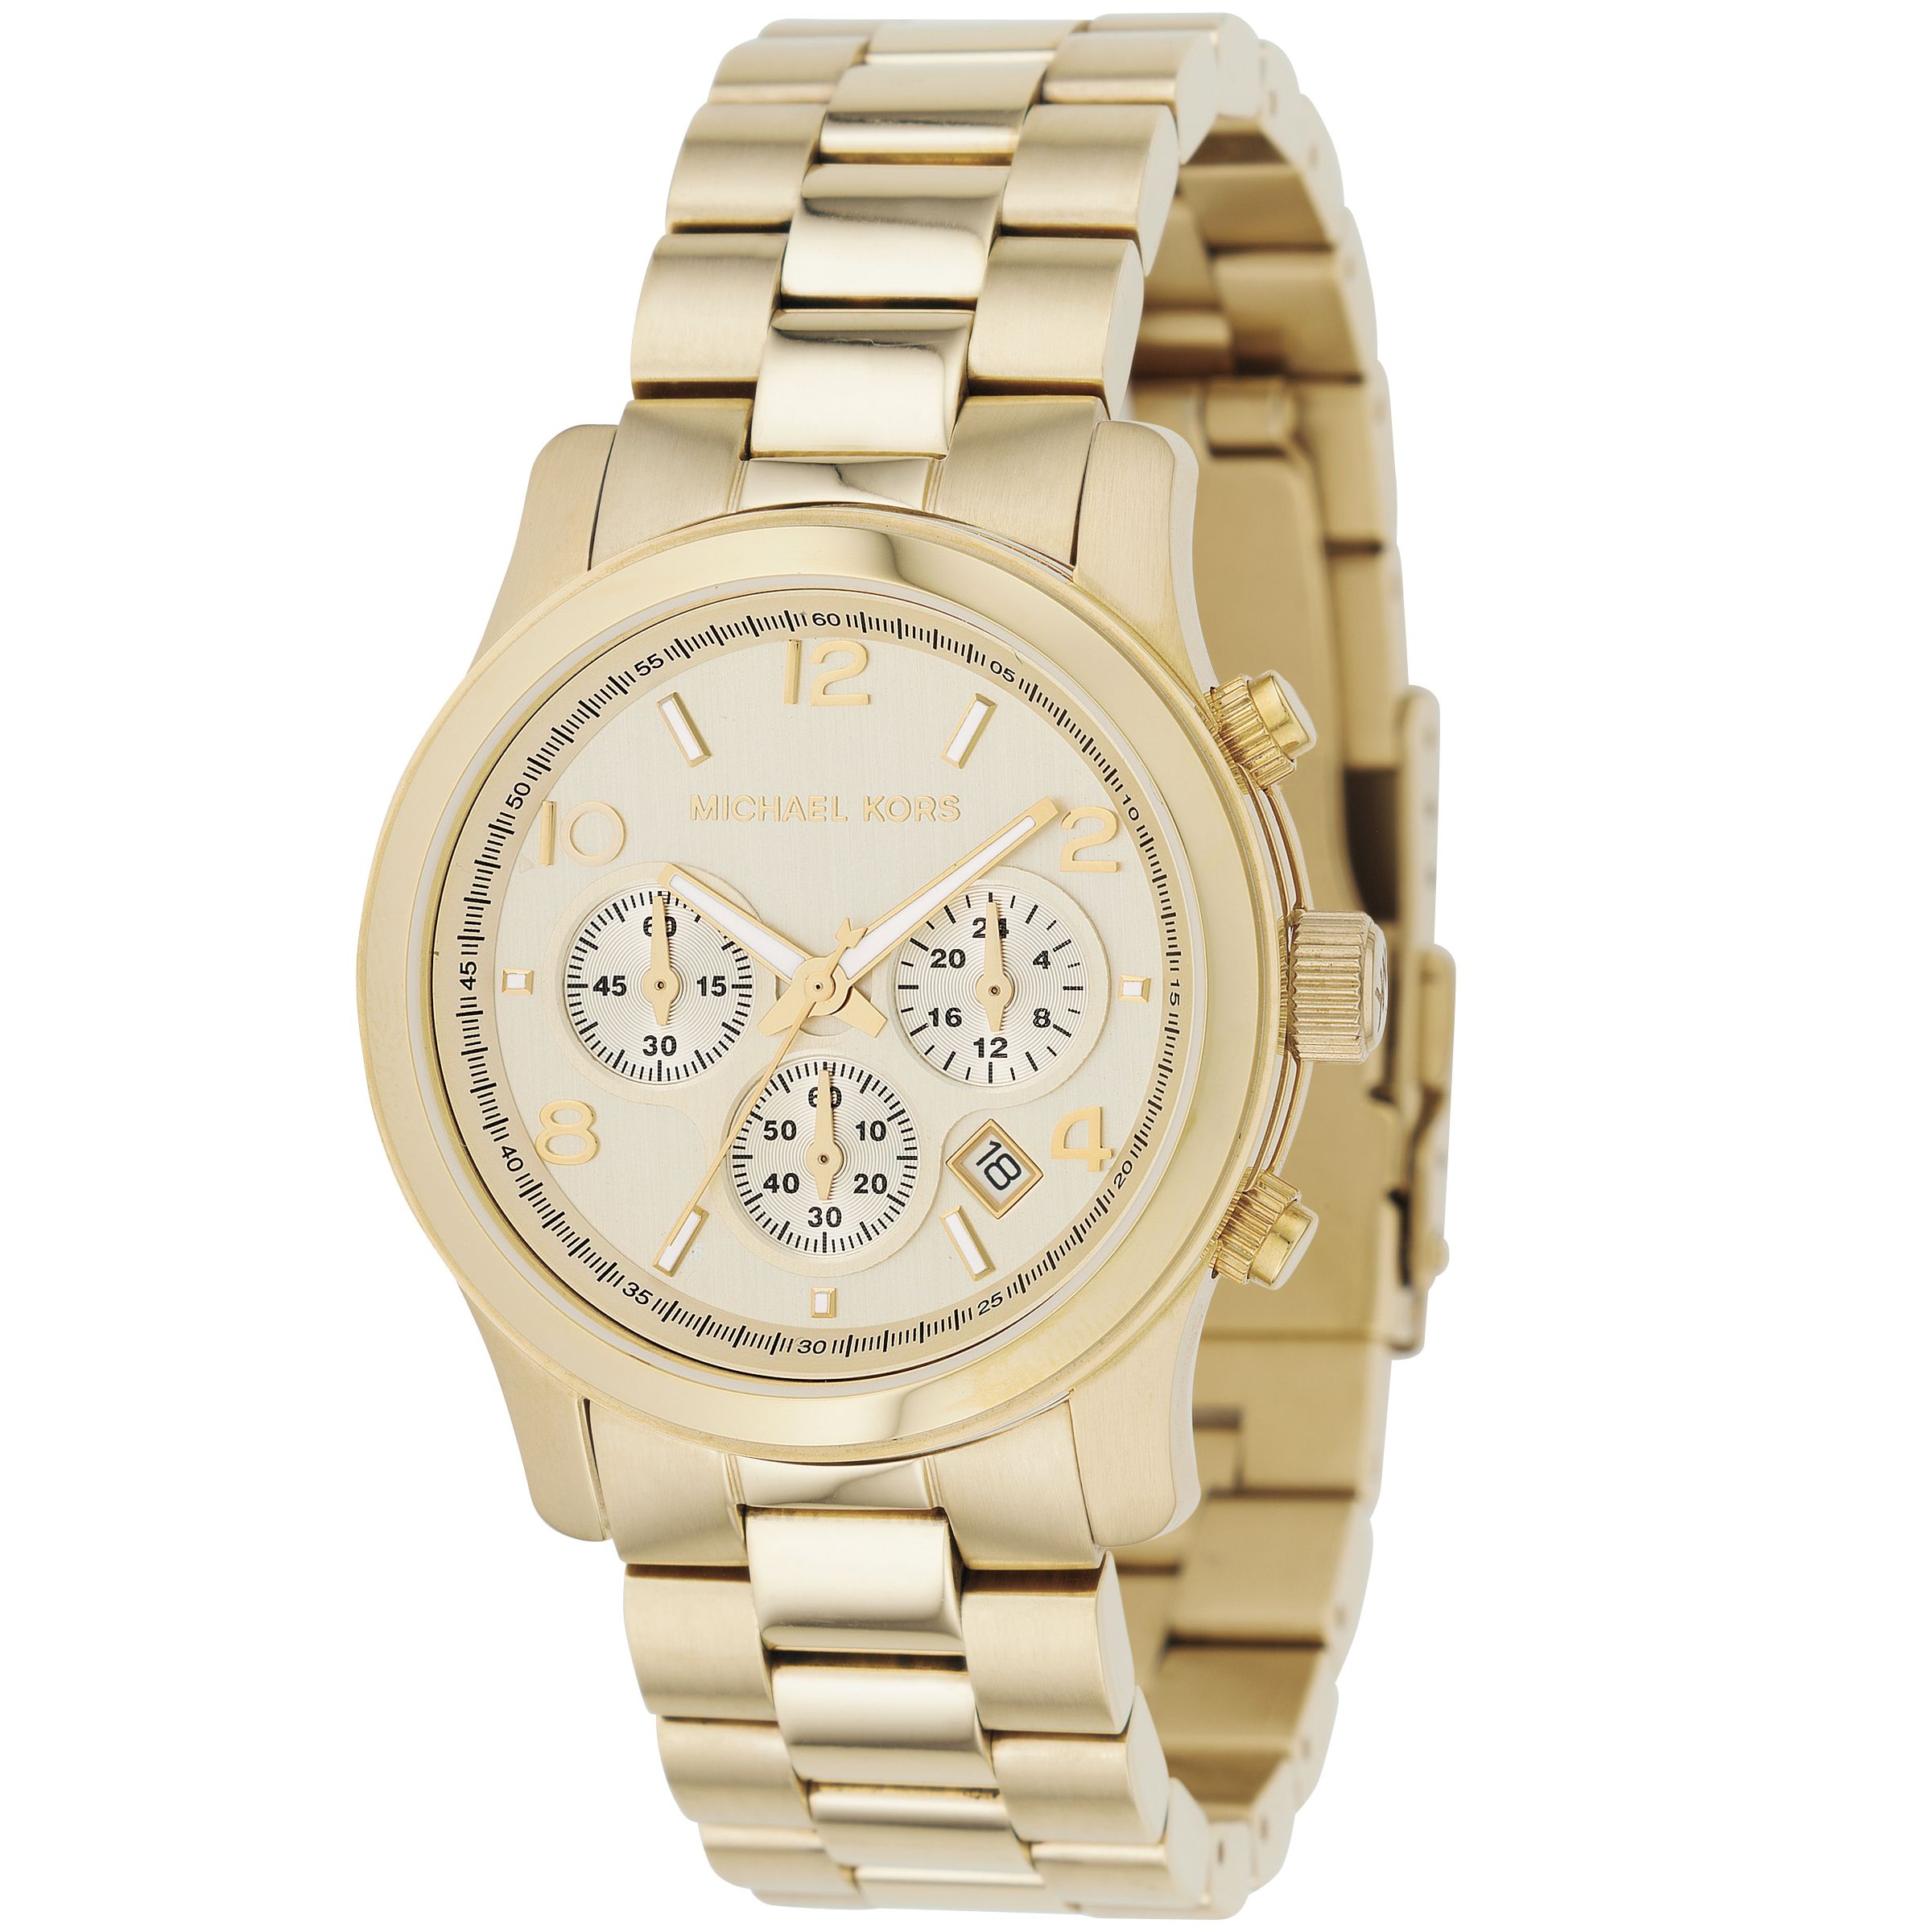 Michael Kors MK5055 Ladies Bracelet Watch, Gold at John Lewis